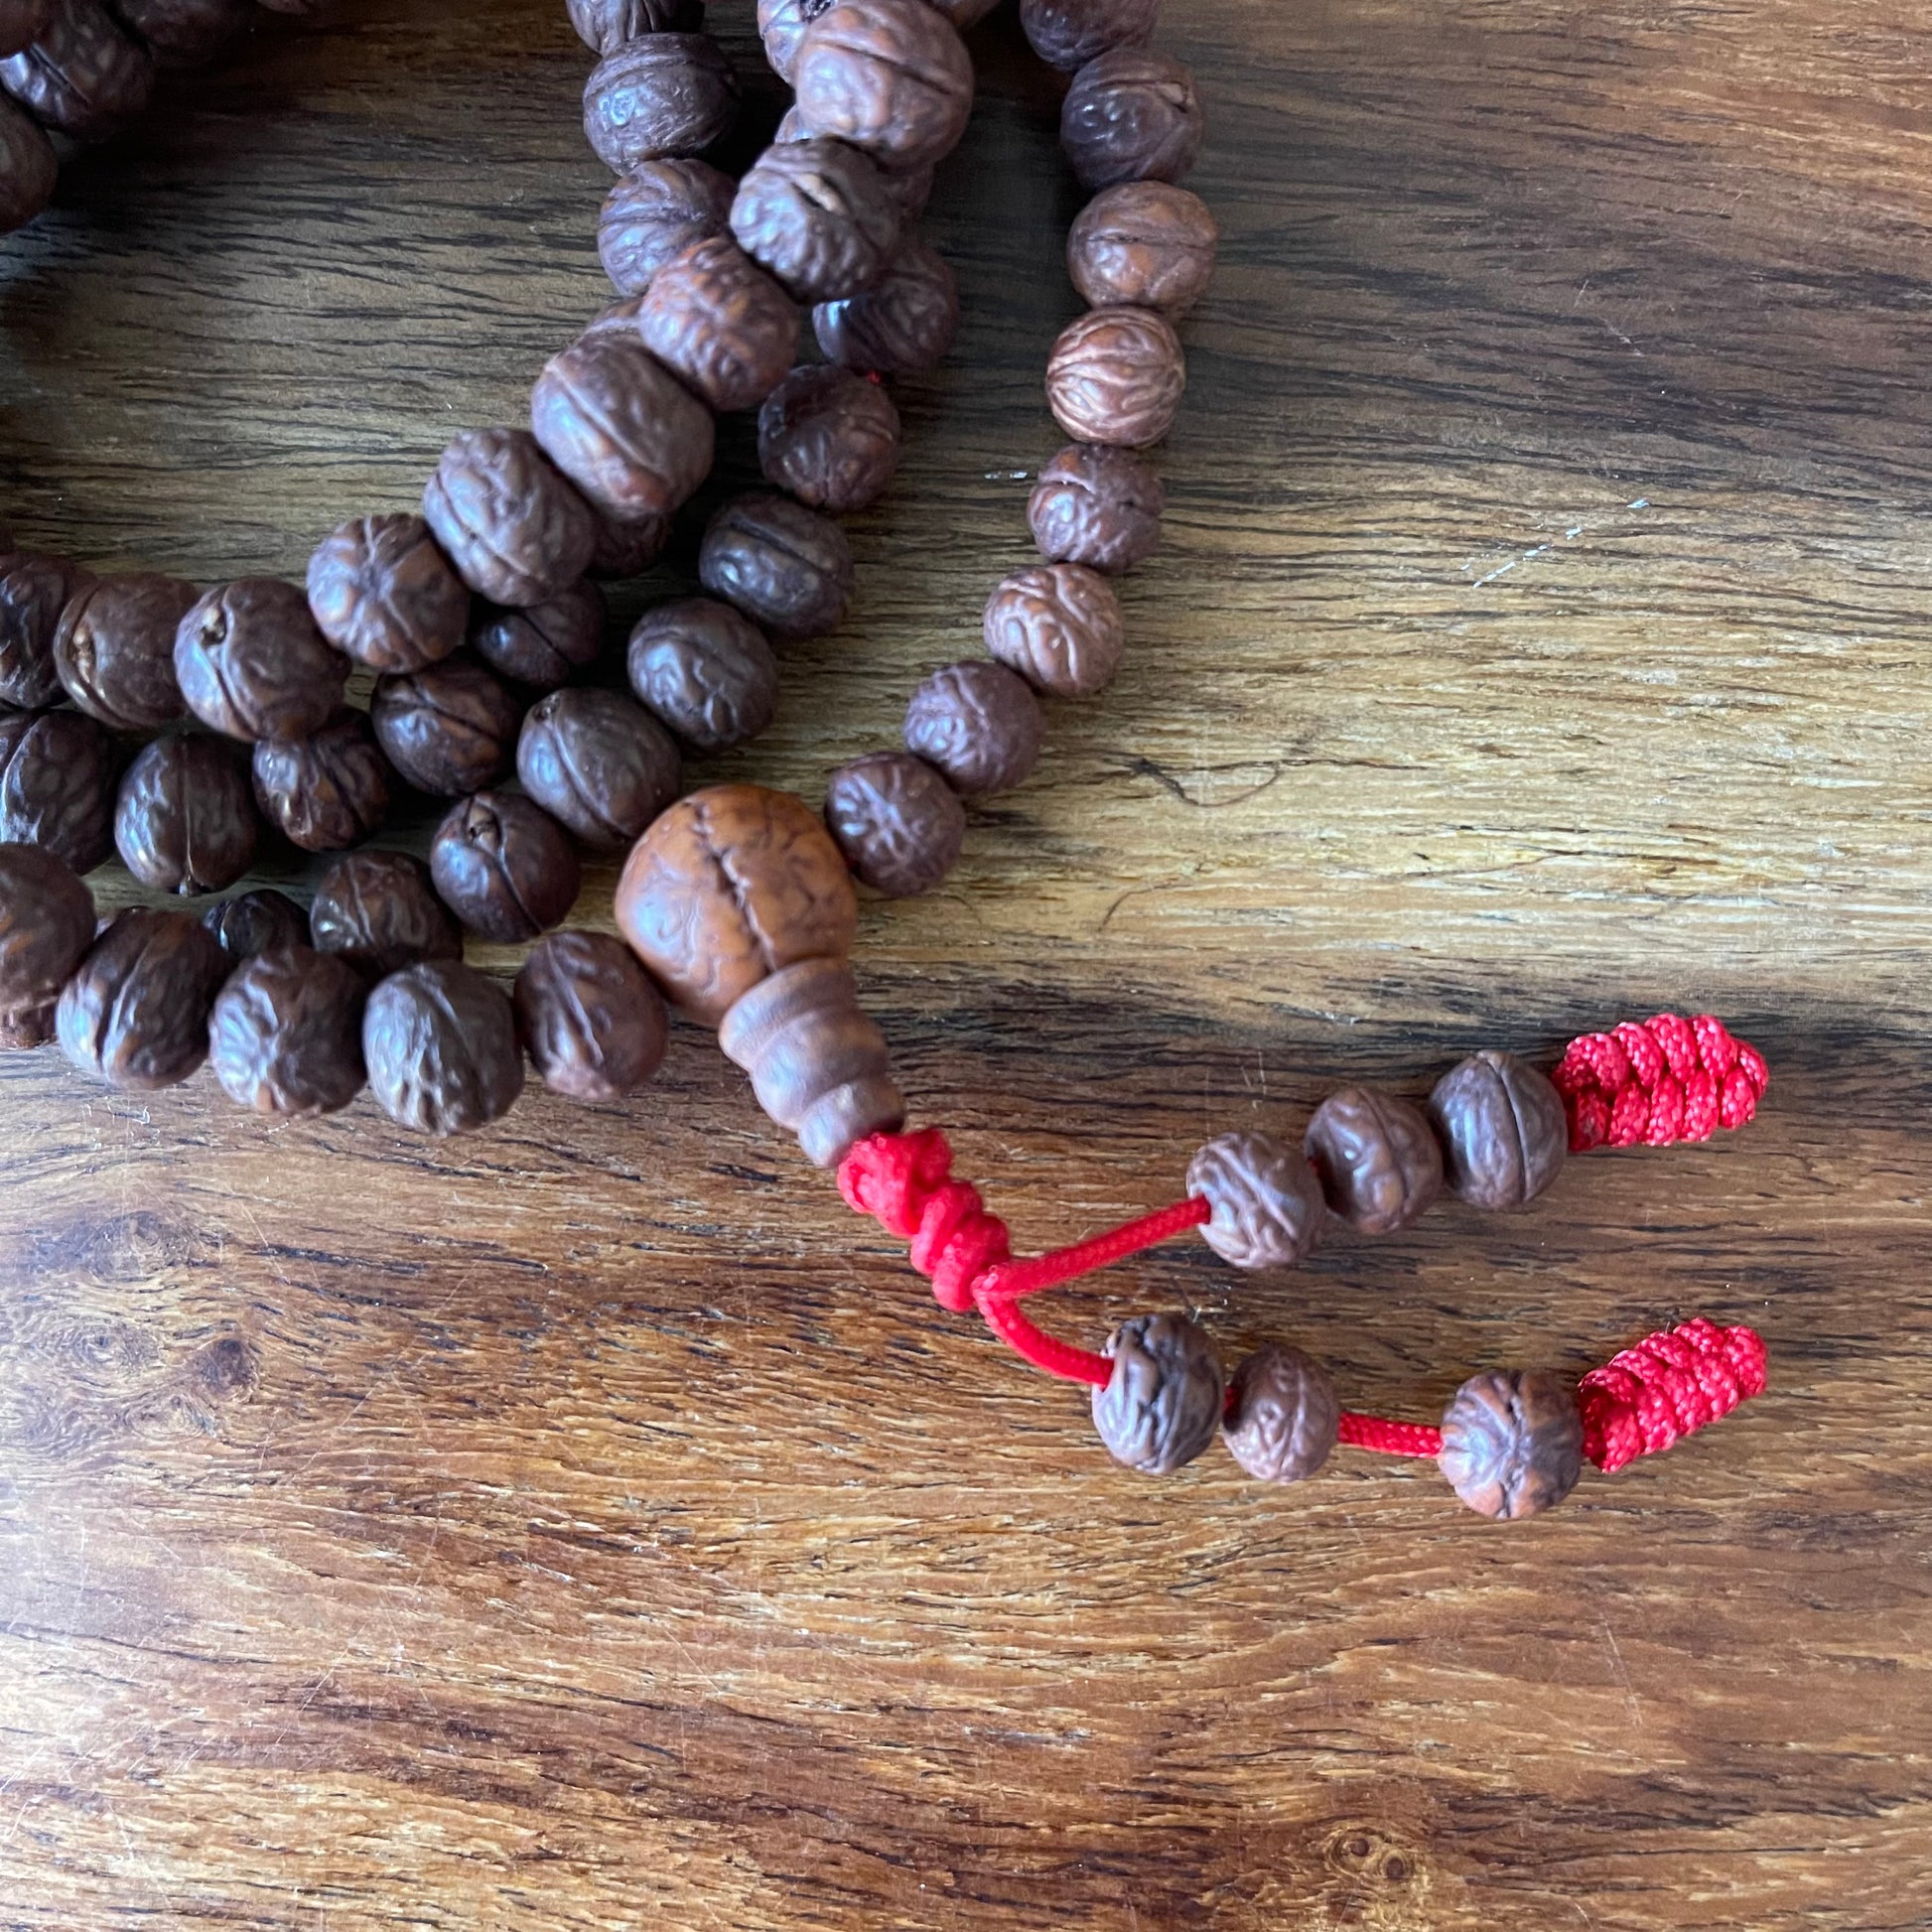 Boxed Wooden Mallah Beads  Buddhist Prayer Beads mala beads – The Buddha  Buddha